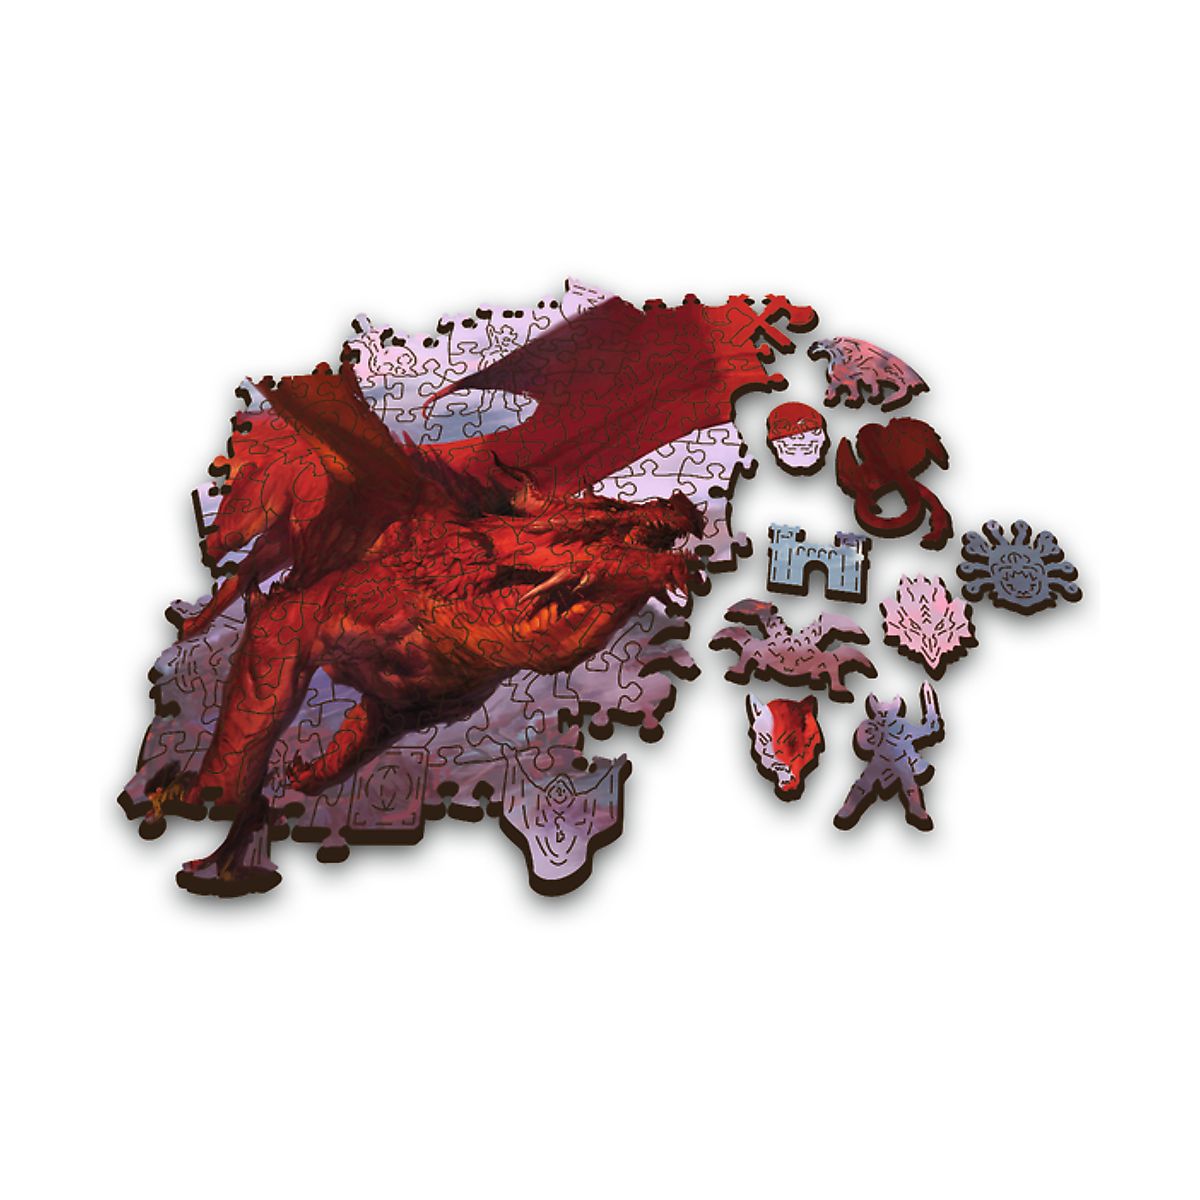 Puzzle Trefl Drewniane Starożytny czerwony smok 501 el. (20181)